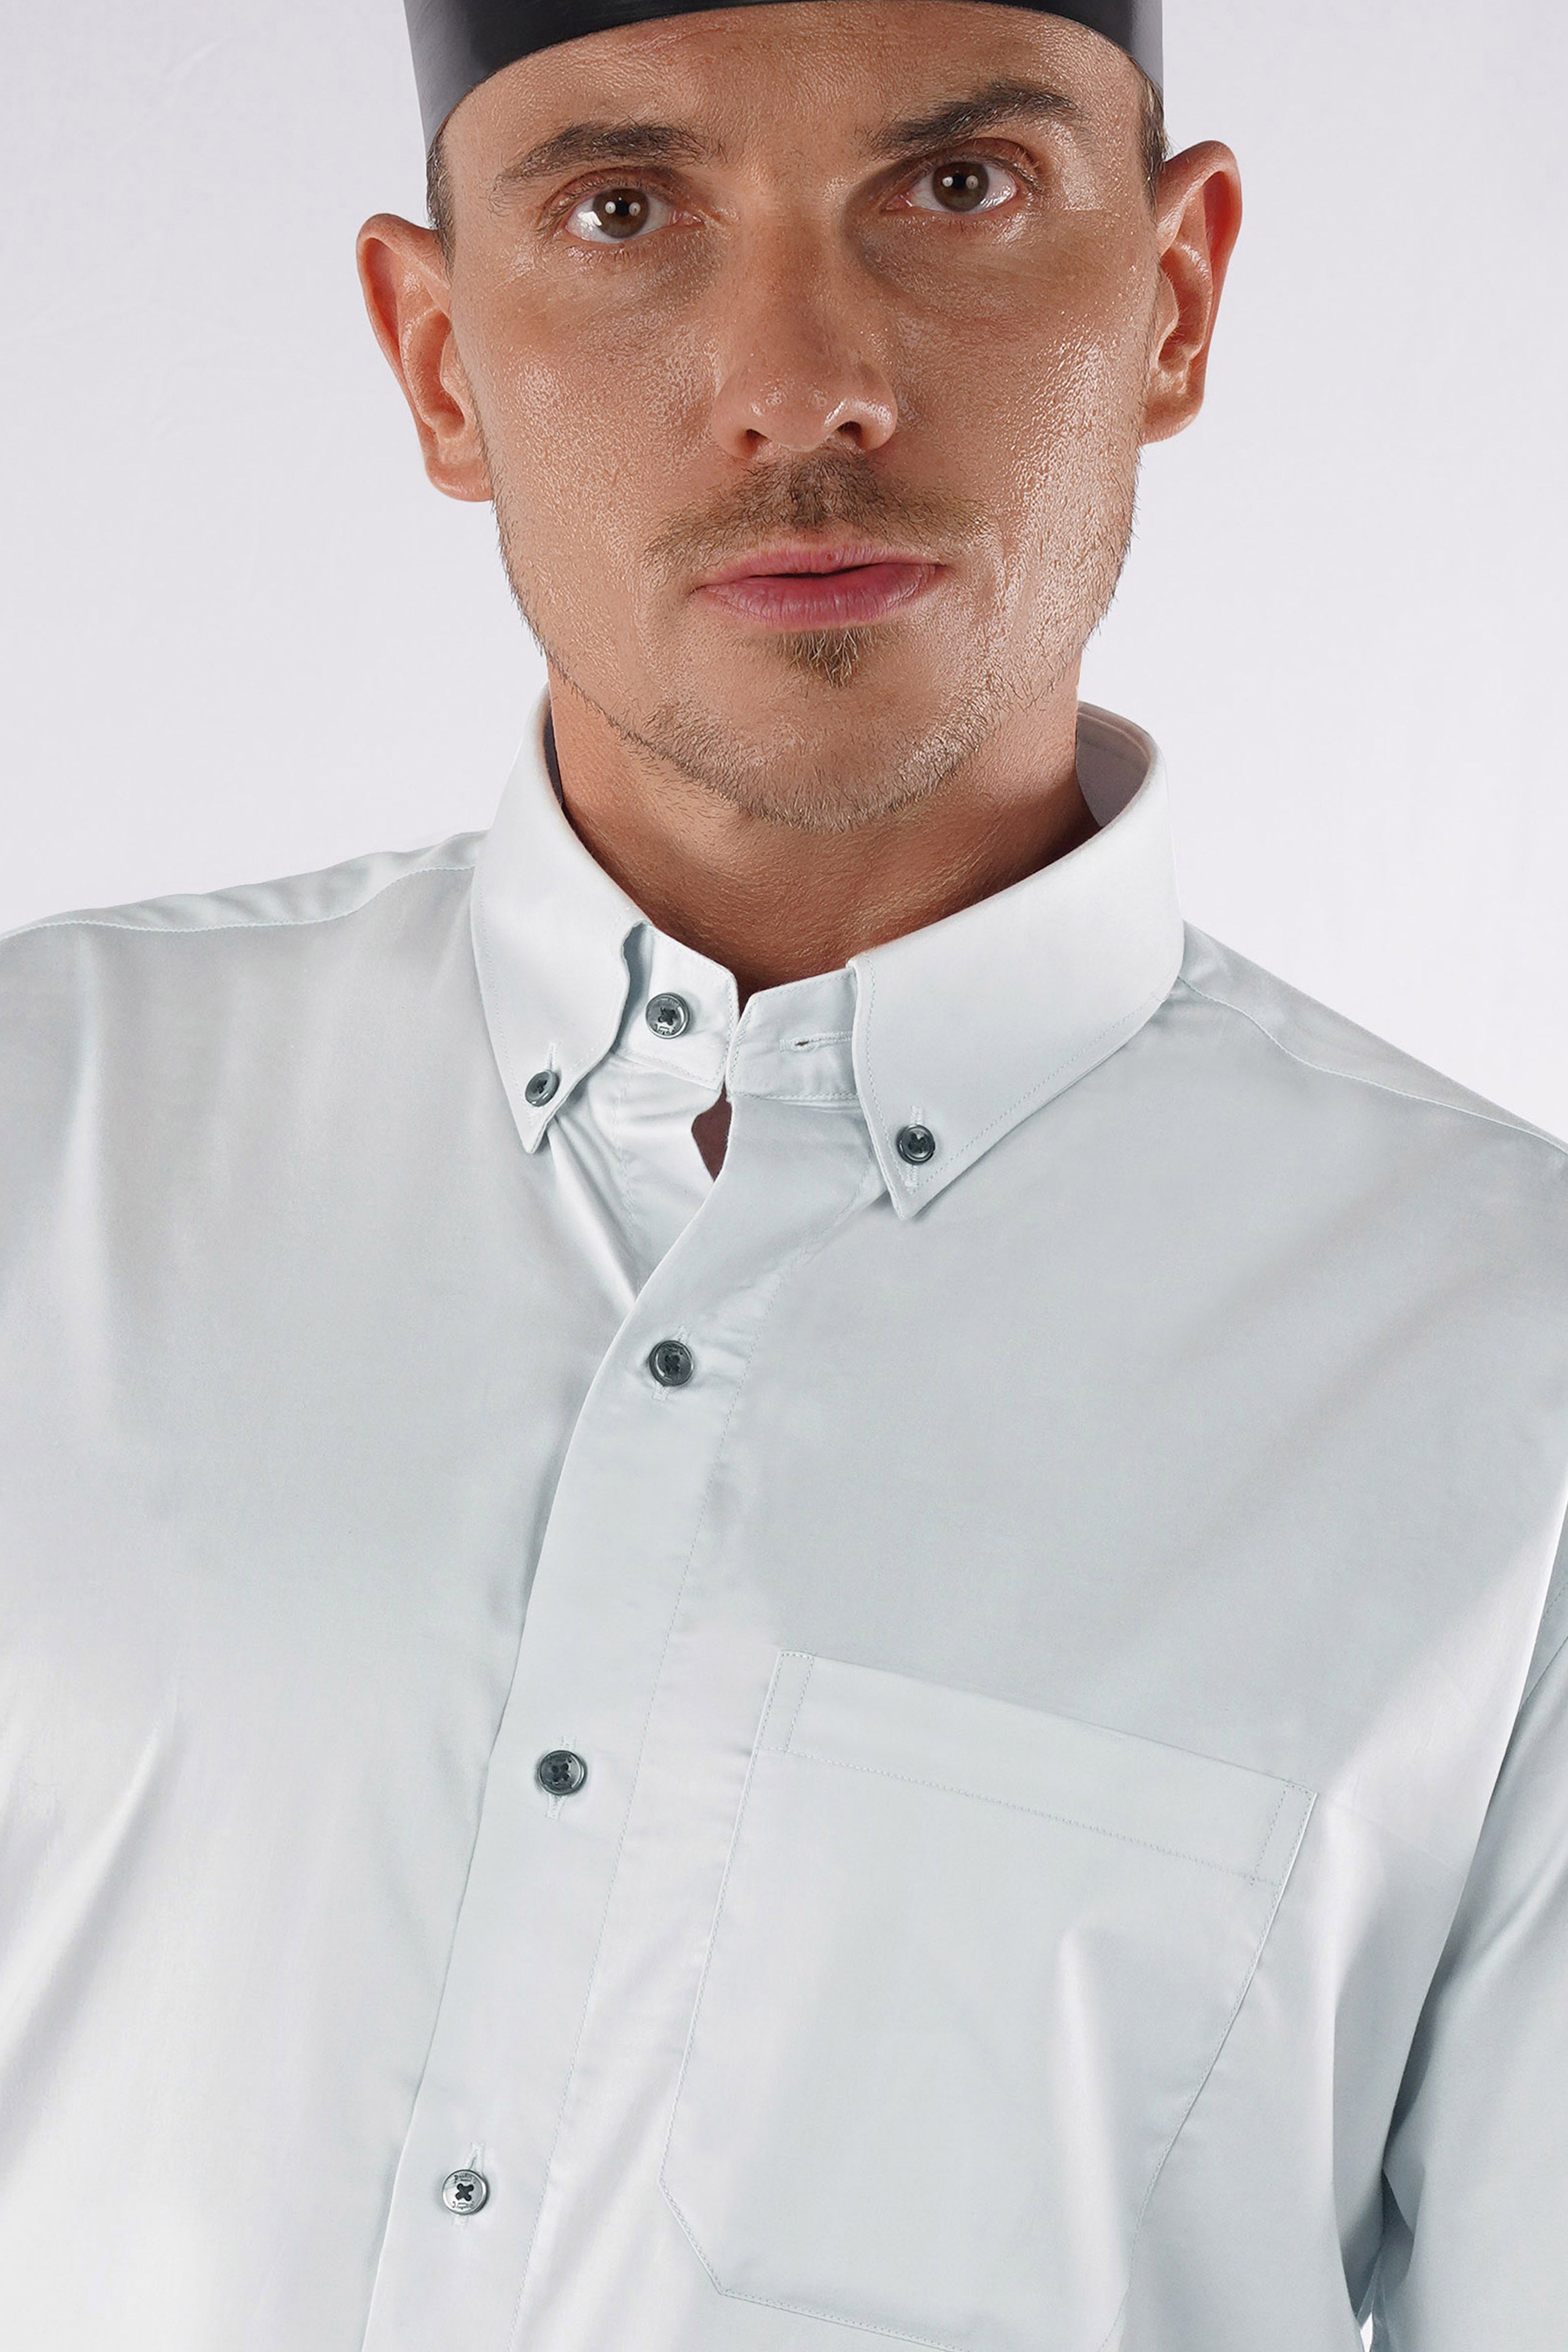 Periglacial Gray Super Soft Premium Cotton Solid Shirt